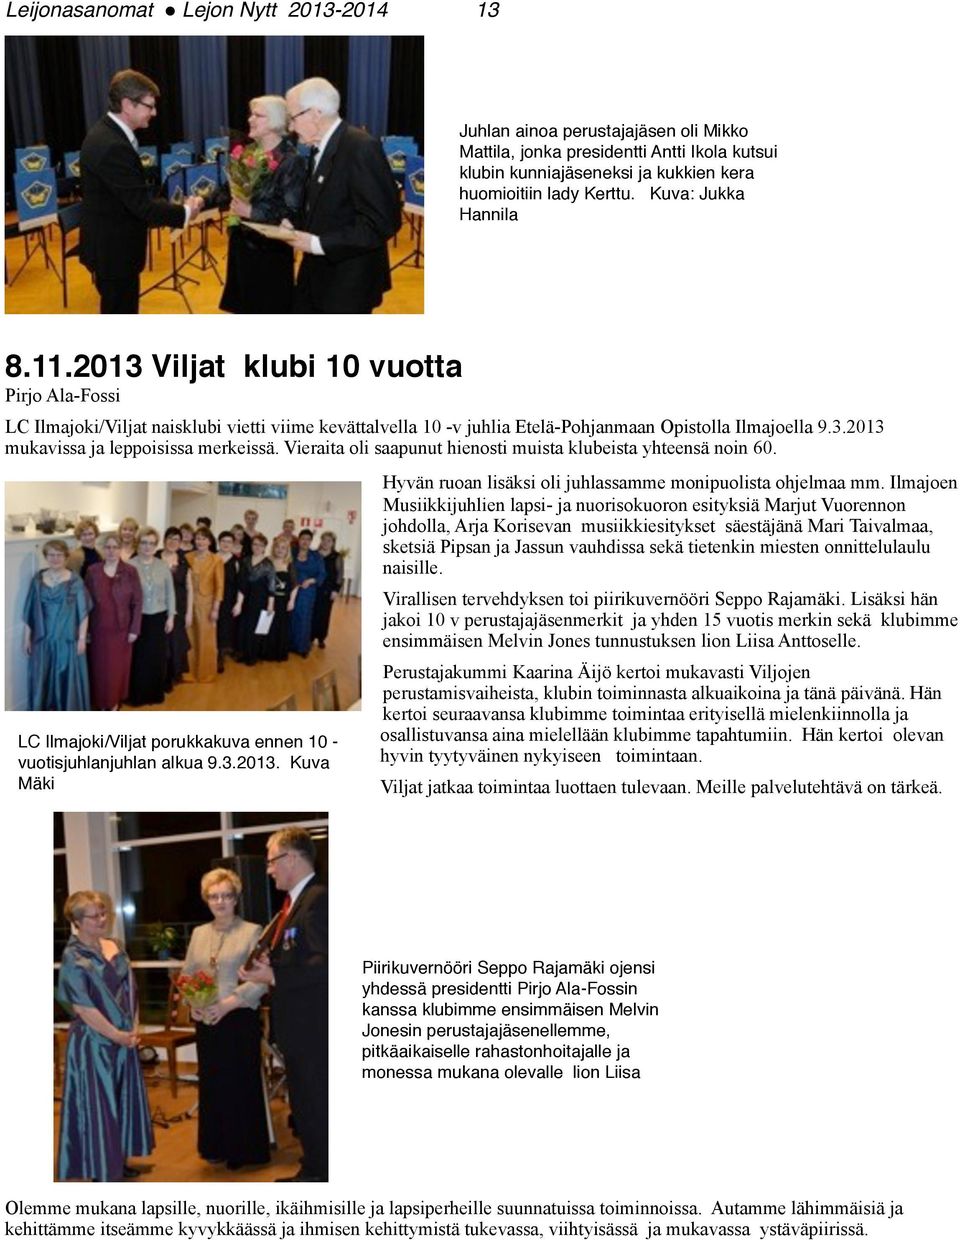 Vieraita oli saapunut hienosti muista klubeista yhteensä noin 60. LC Ilmajoki/Viljat porukkakuva ennen 10 - vuotisjuhlanjuhlan alkua 9.3.2013.